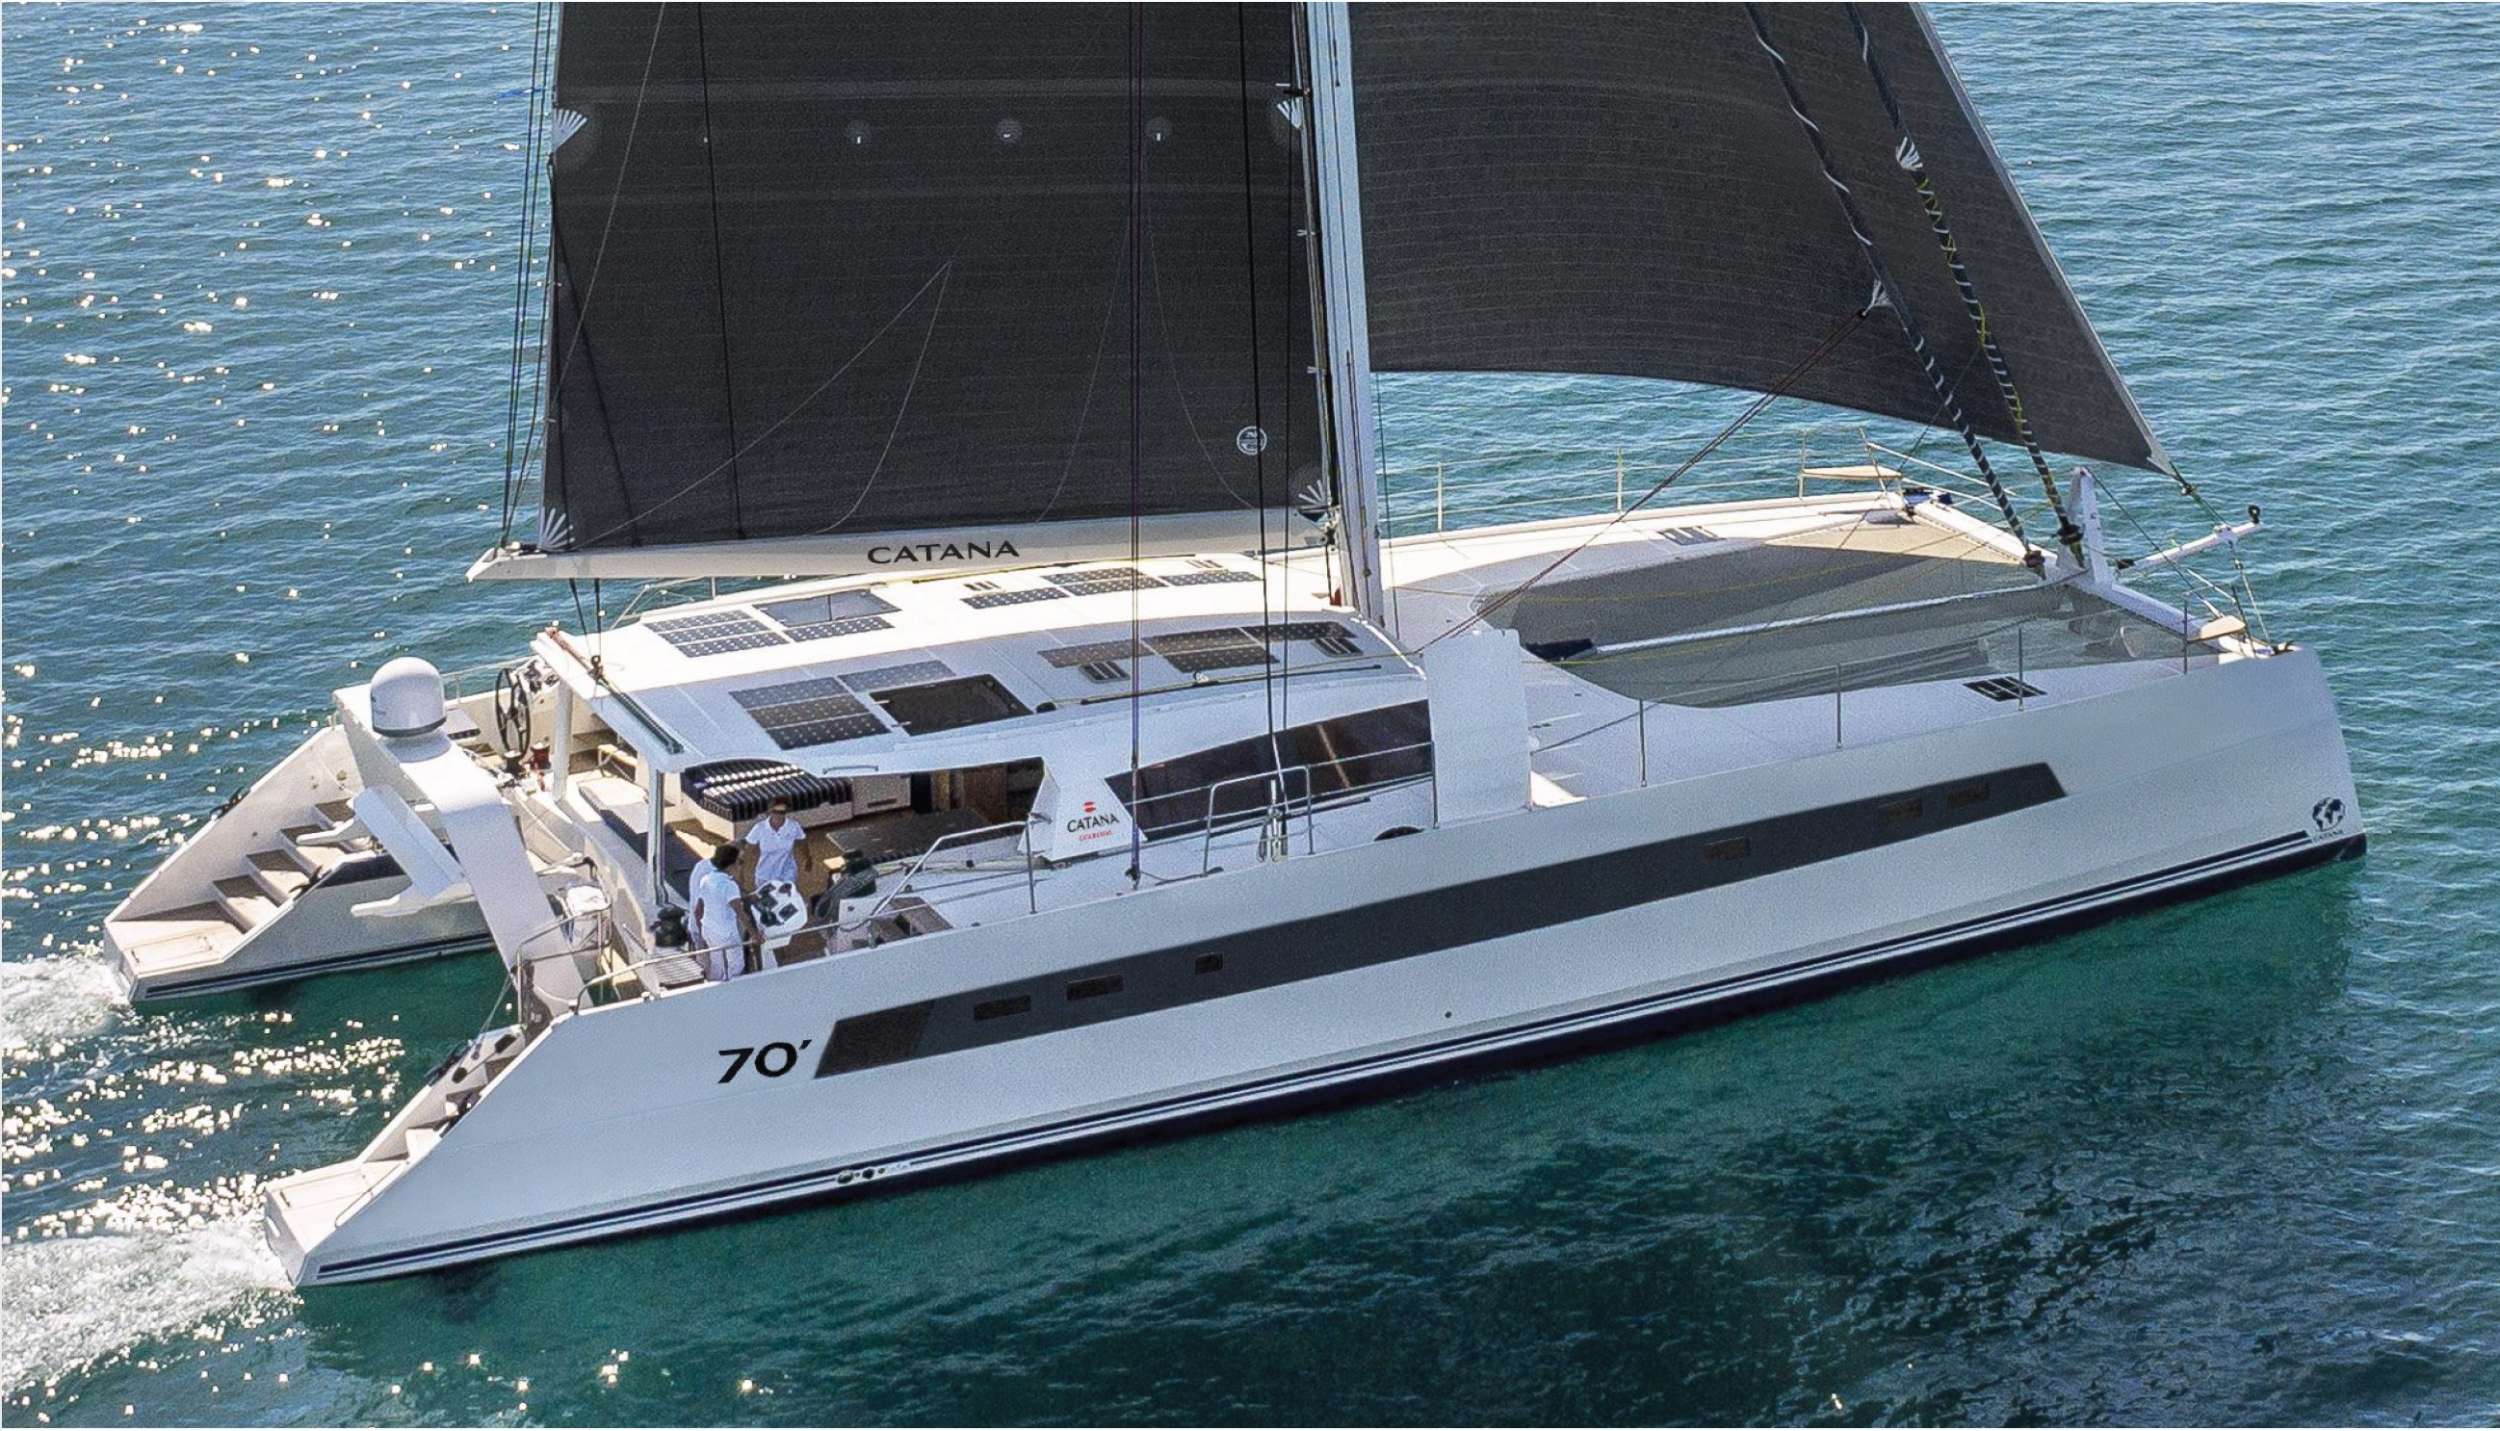 NEPTUNE - Yacht Charter Cecina & Boat hire in Fr. Riviera & Tyrrhenian Sea 1